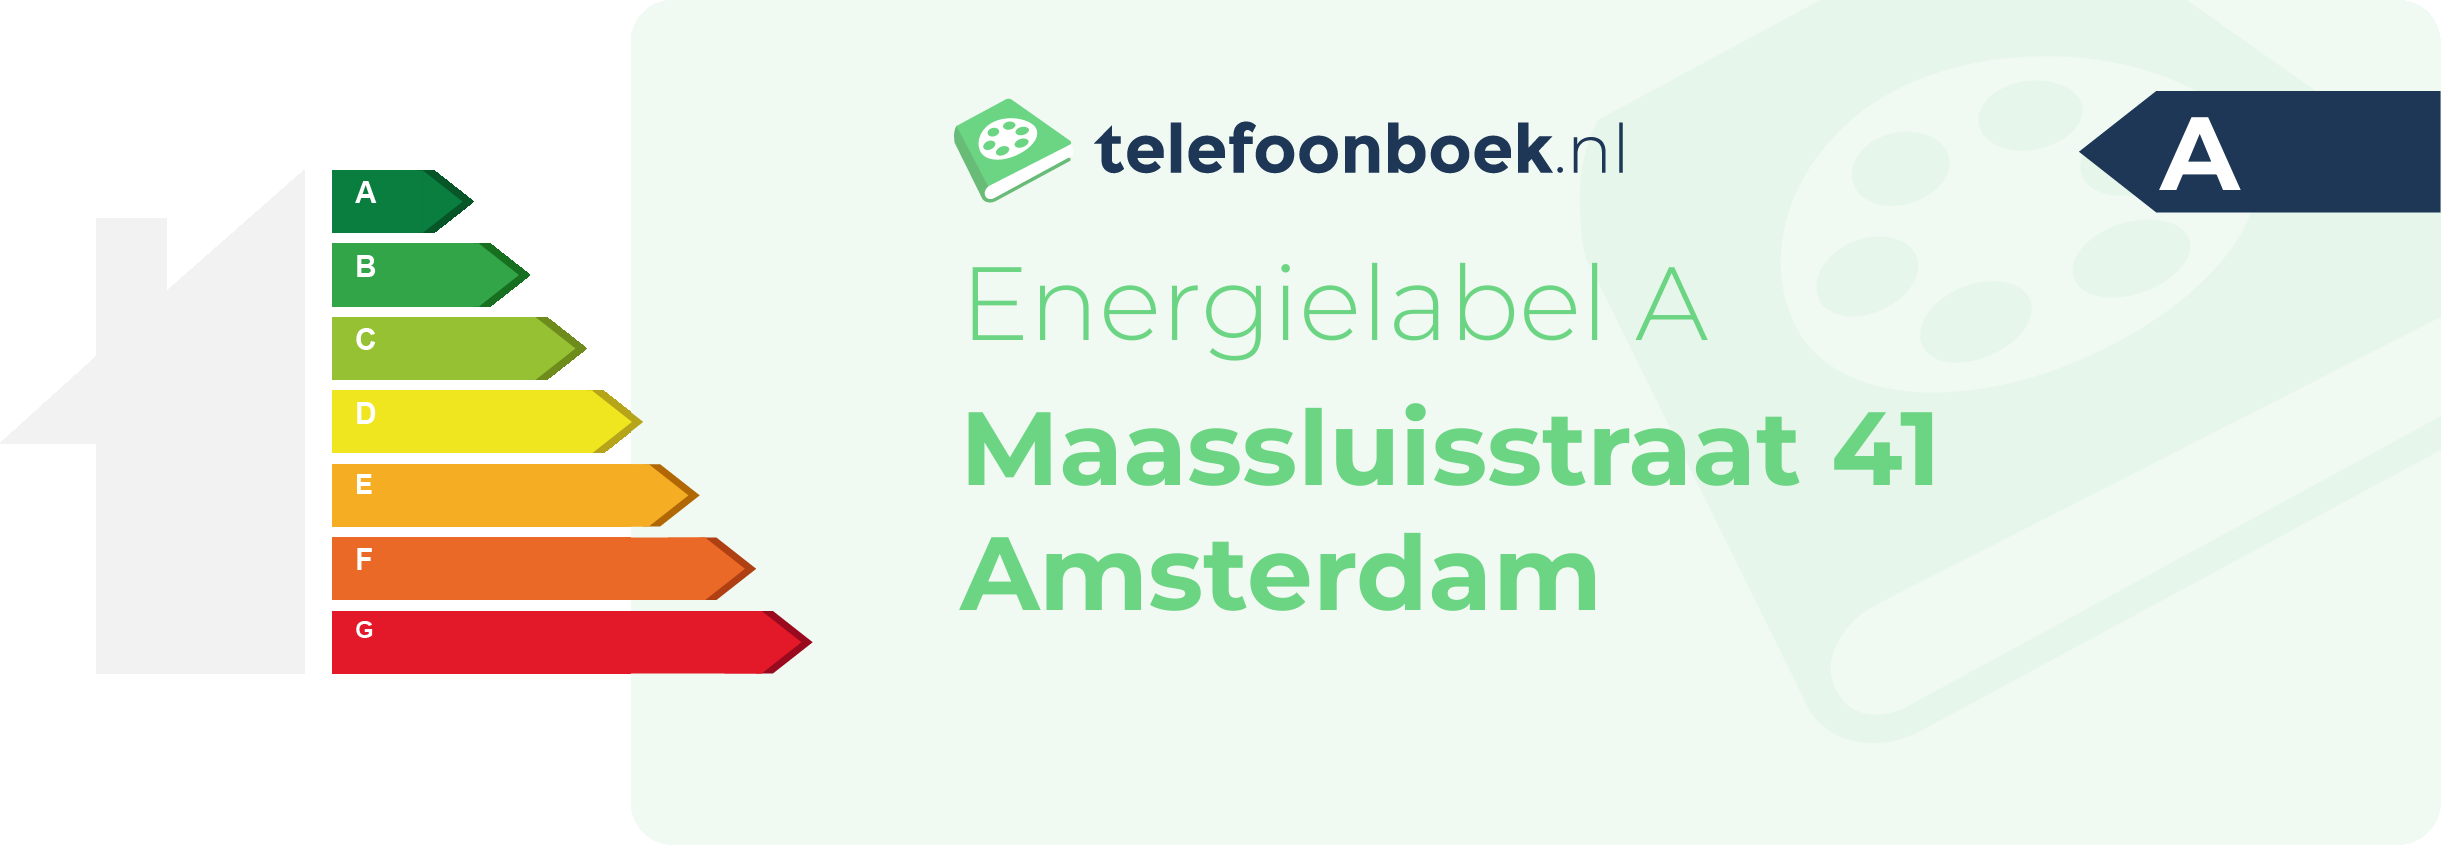 Energielabel Maassluisstraat 41 Amsterdam